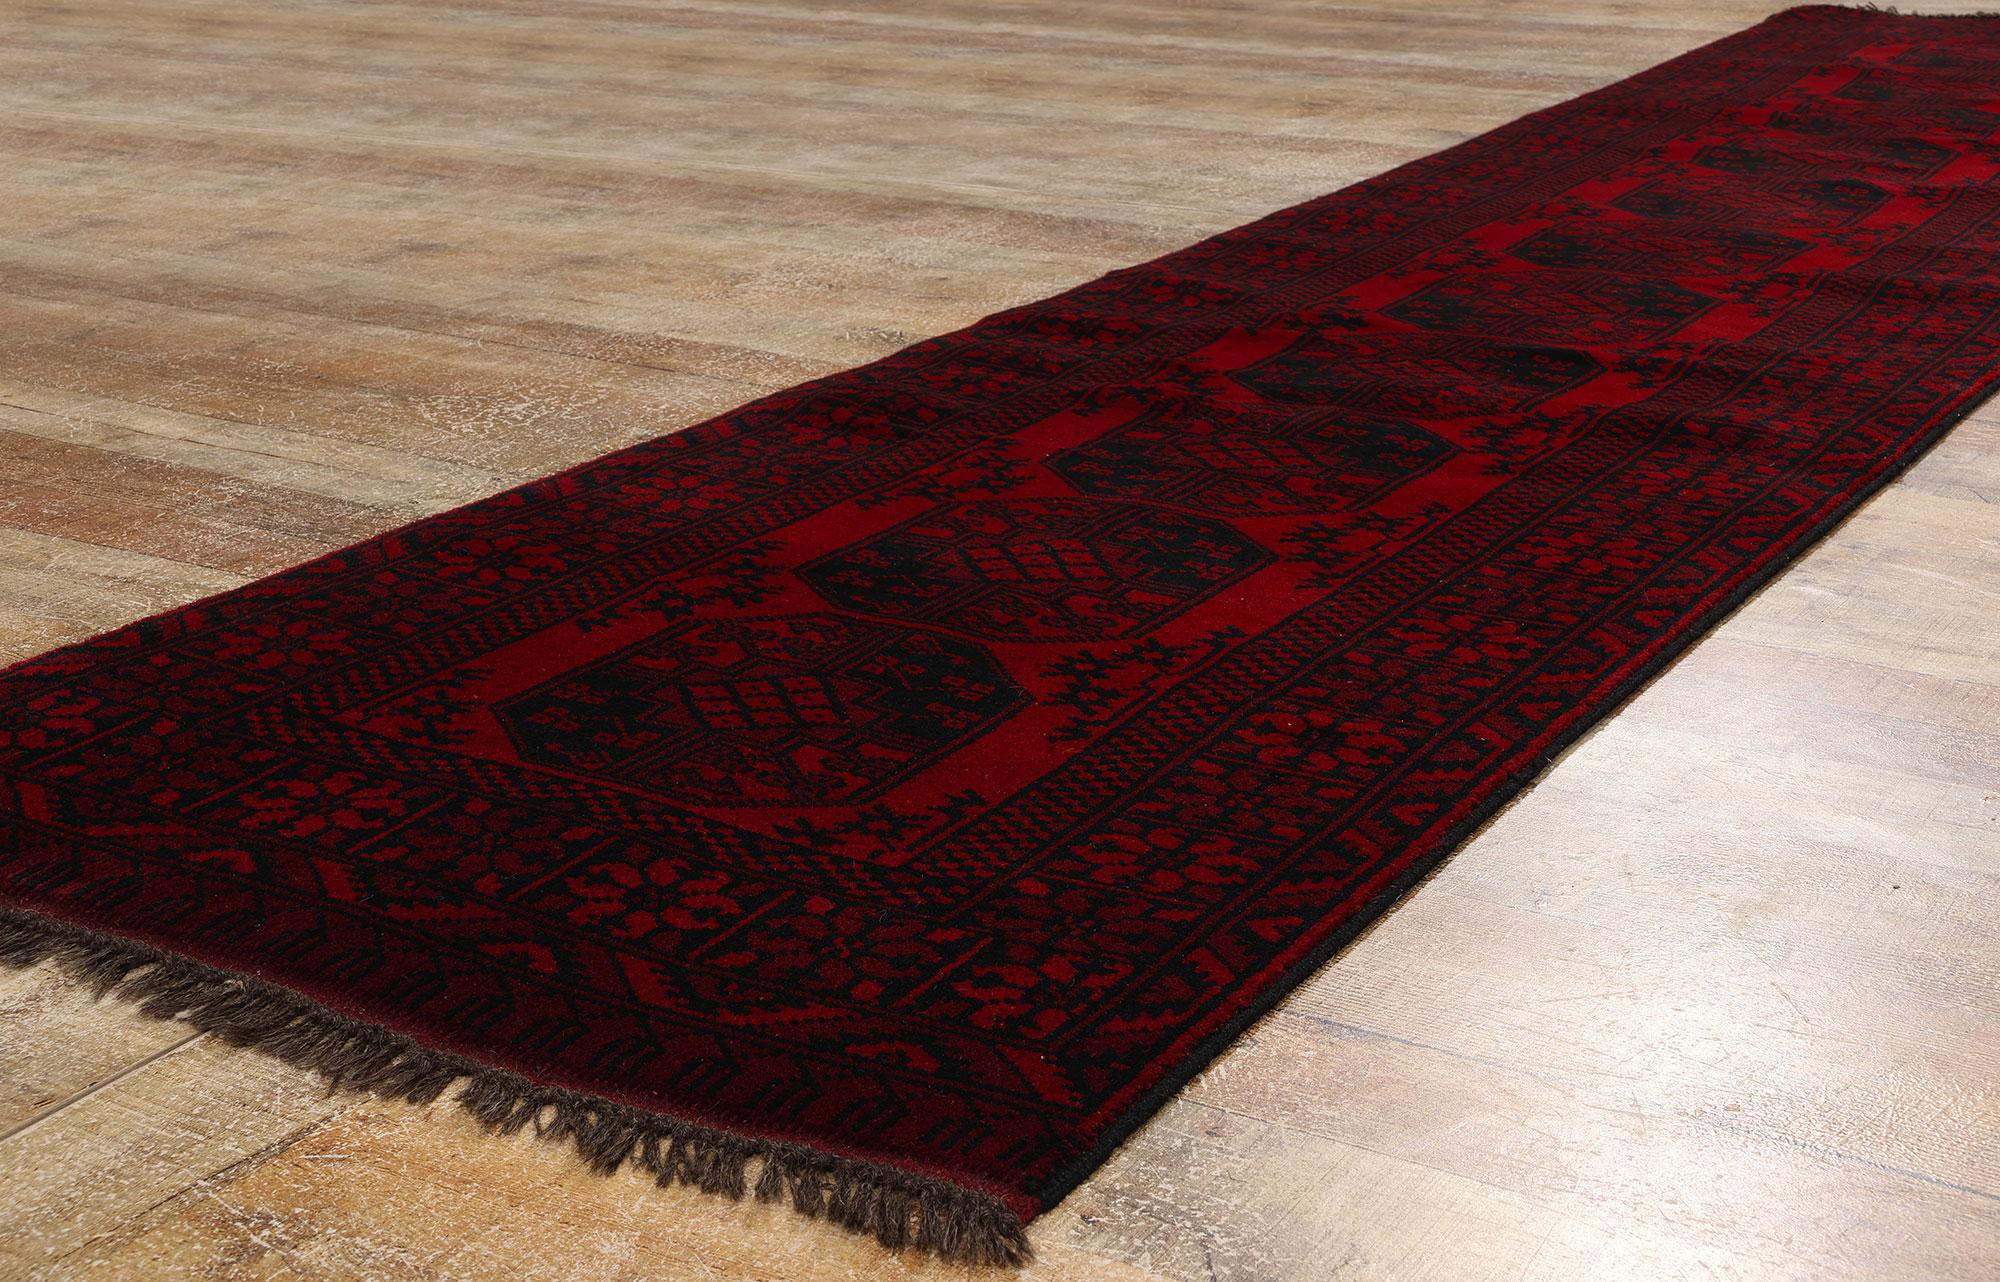 78718 Tapis Vintage Turkoman Runner, 02'09 x 12'10. Un tapis persan Turkoman est un tapis tissé à la main, originaire du peuple turkmène, principalement en Asie centrale, y compris dans certaines parties de l'Iran. L'ajout du mot 